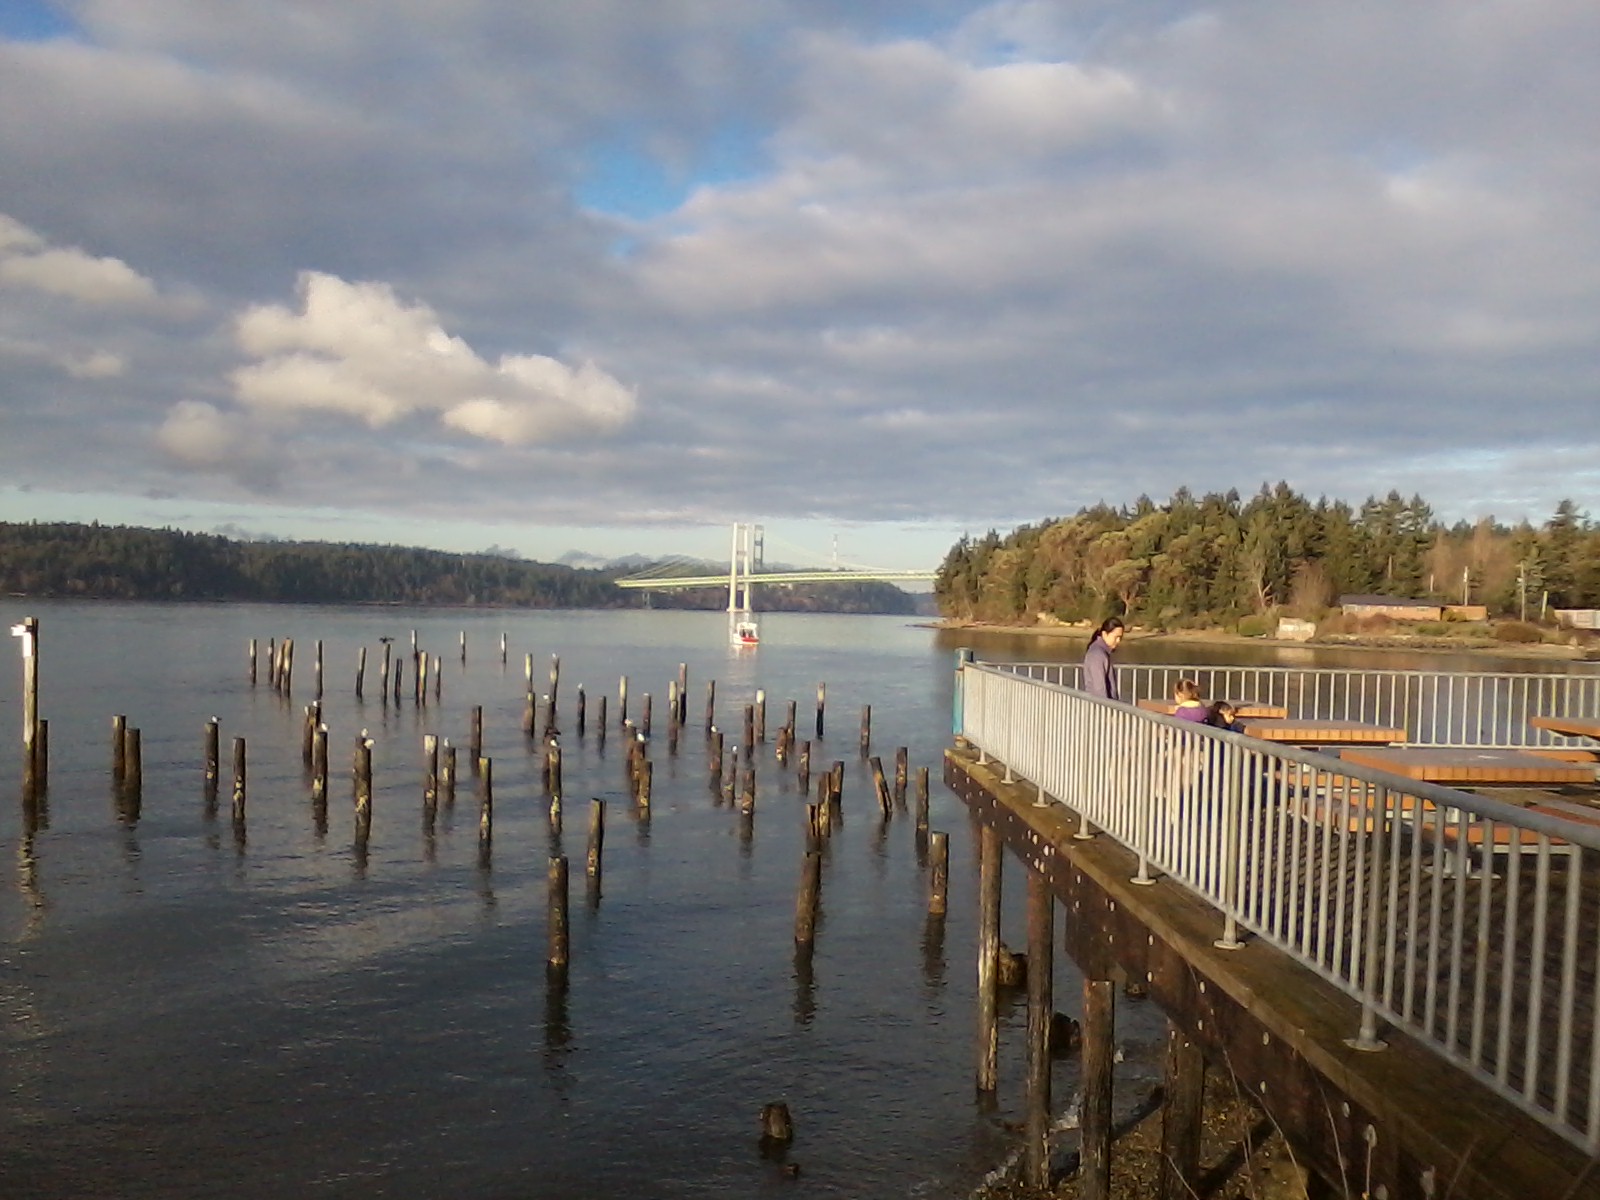 Puget Sound And Tacoma Narrows Bridge